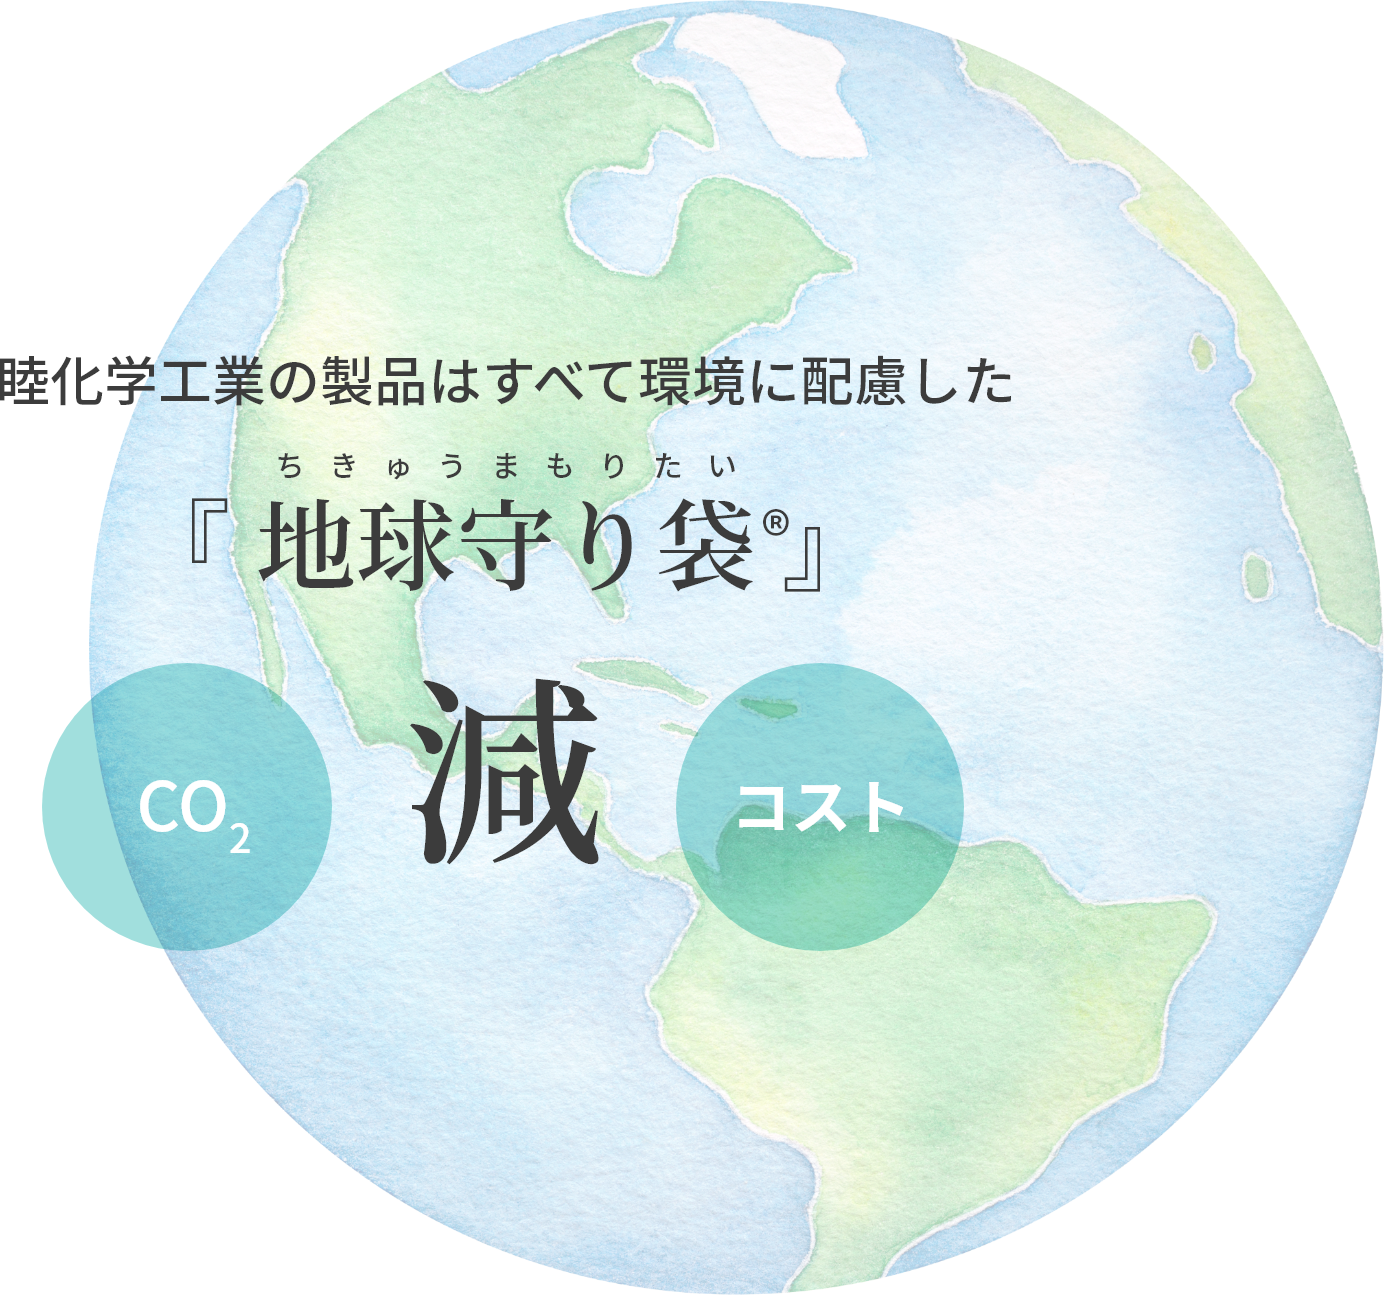 睦化学工業の製品はすべて環境に配慮した『 地球守り袋 』